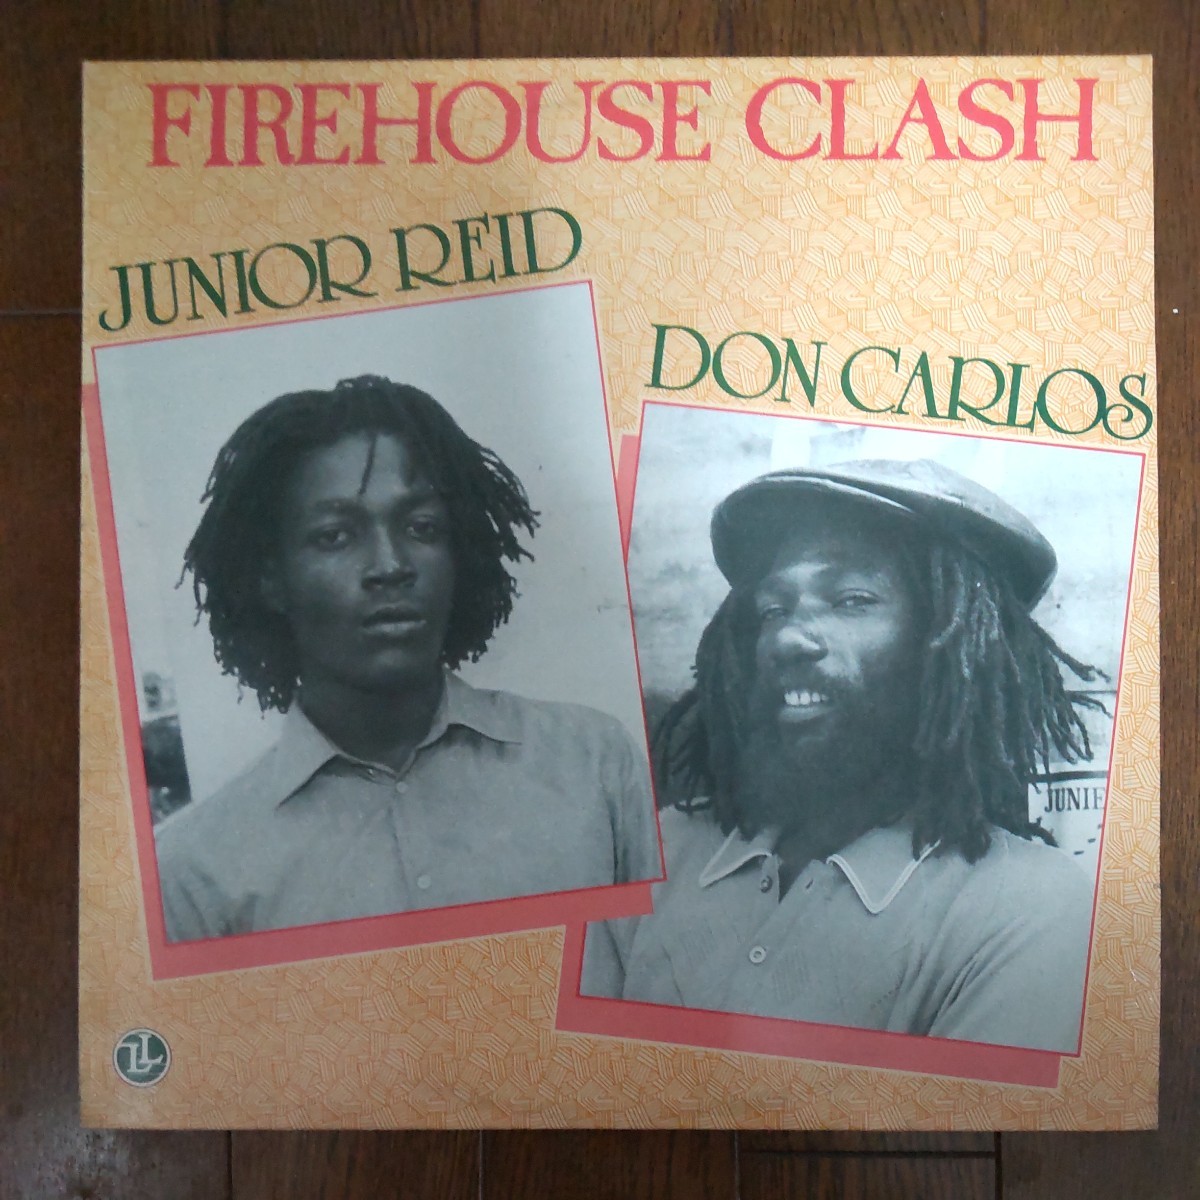 JUNIOR REID，DON CARLOS FIREHOUSE CLASH ジュニア・リード、ドン・カルロス ファイアーハウスクラッシュ アナログ盤LPレコードの画像1